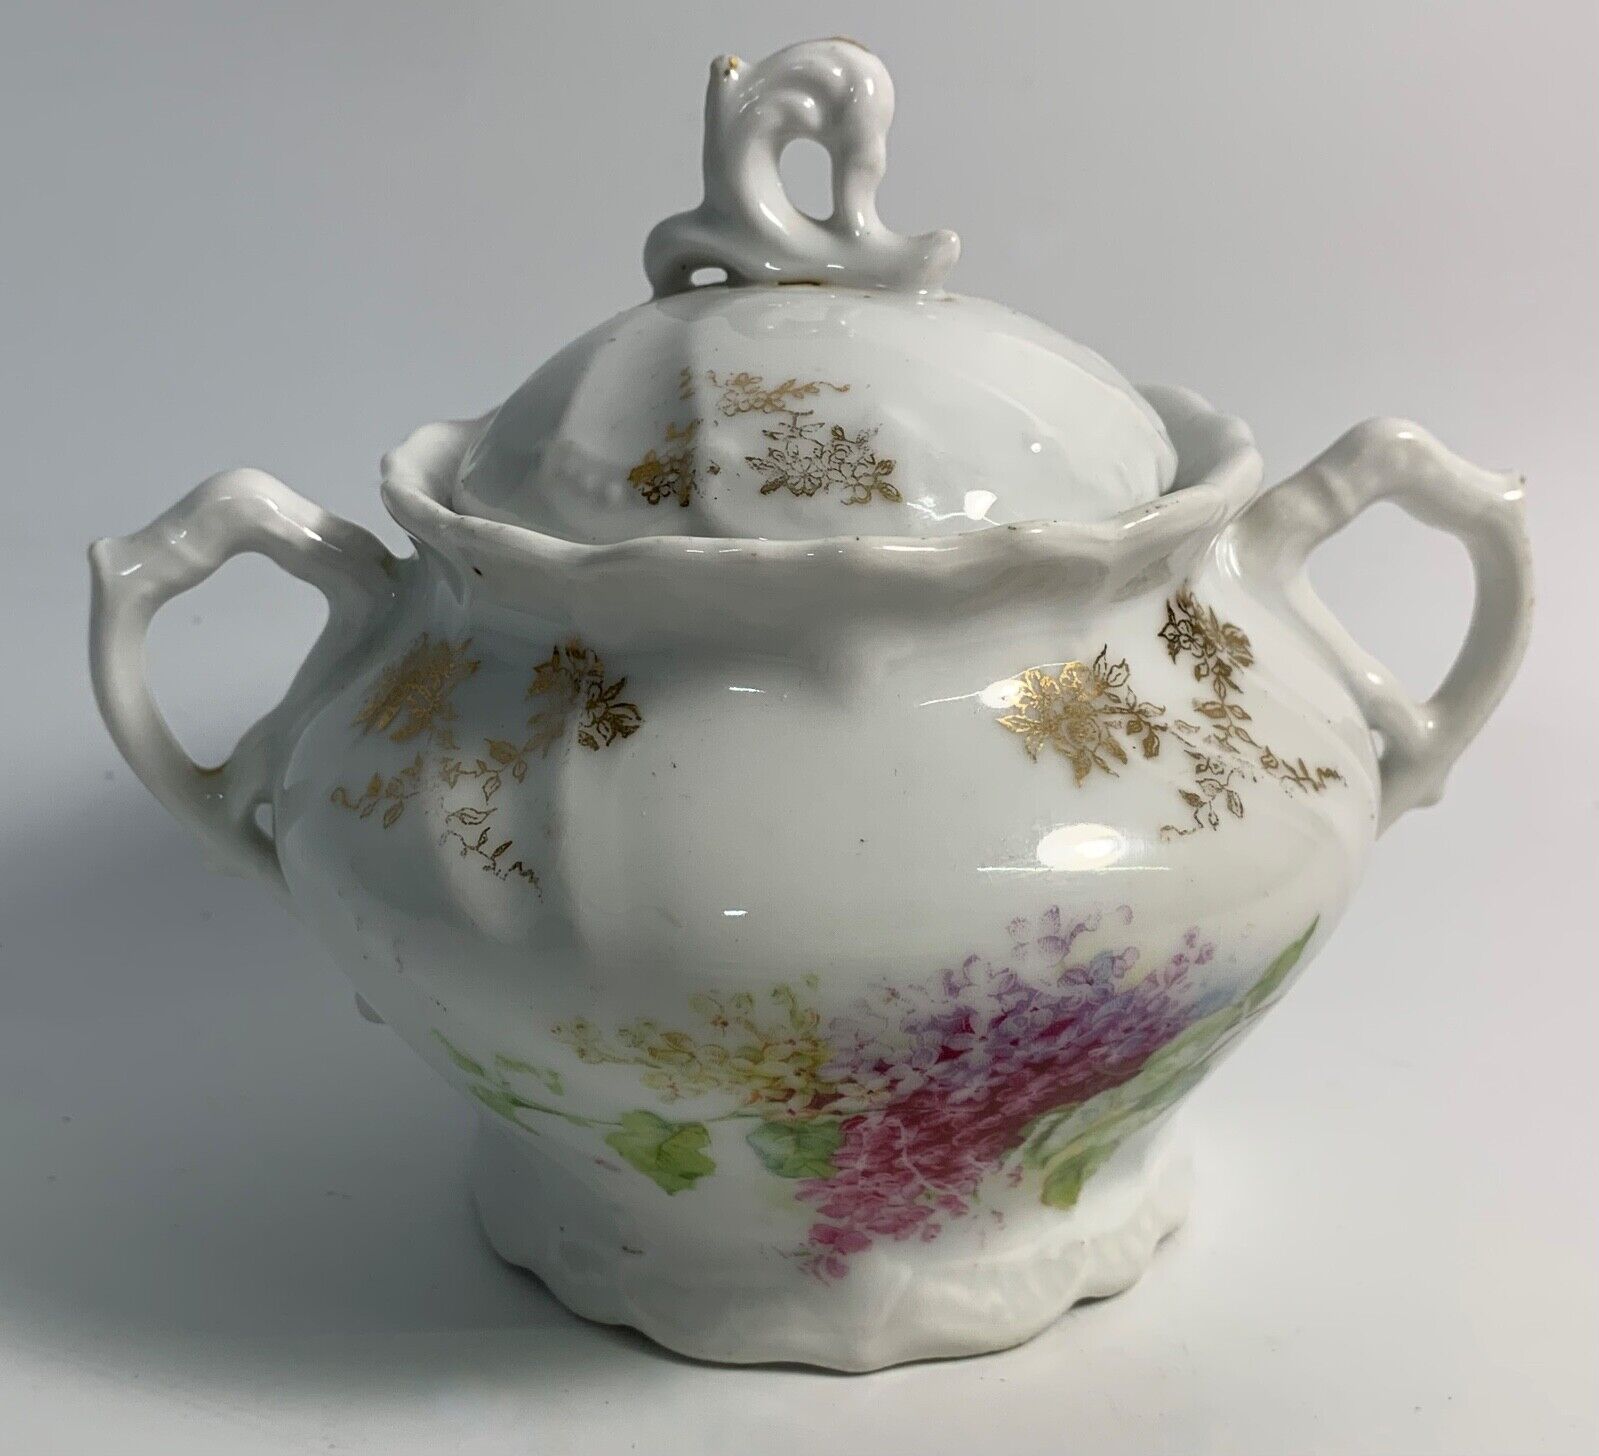 VTG Ceramic? Porcelain? Sugar Bowl Pot Dish w/ Lid Floral Design Flowers